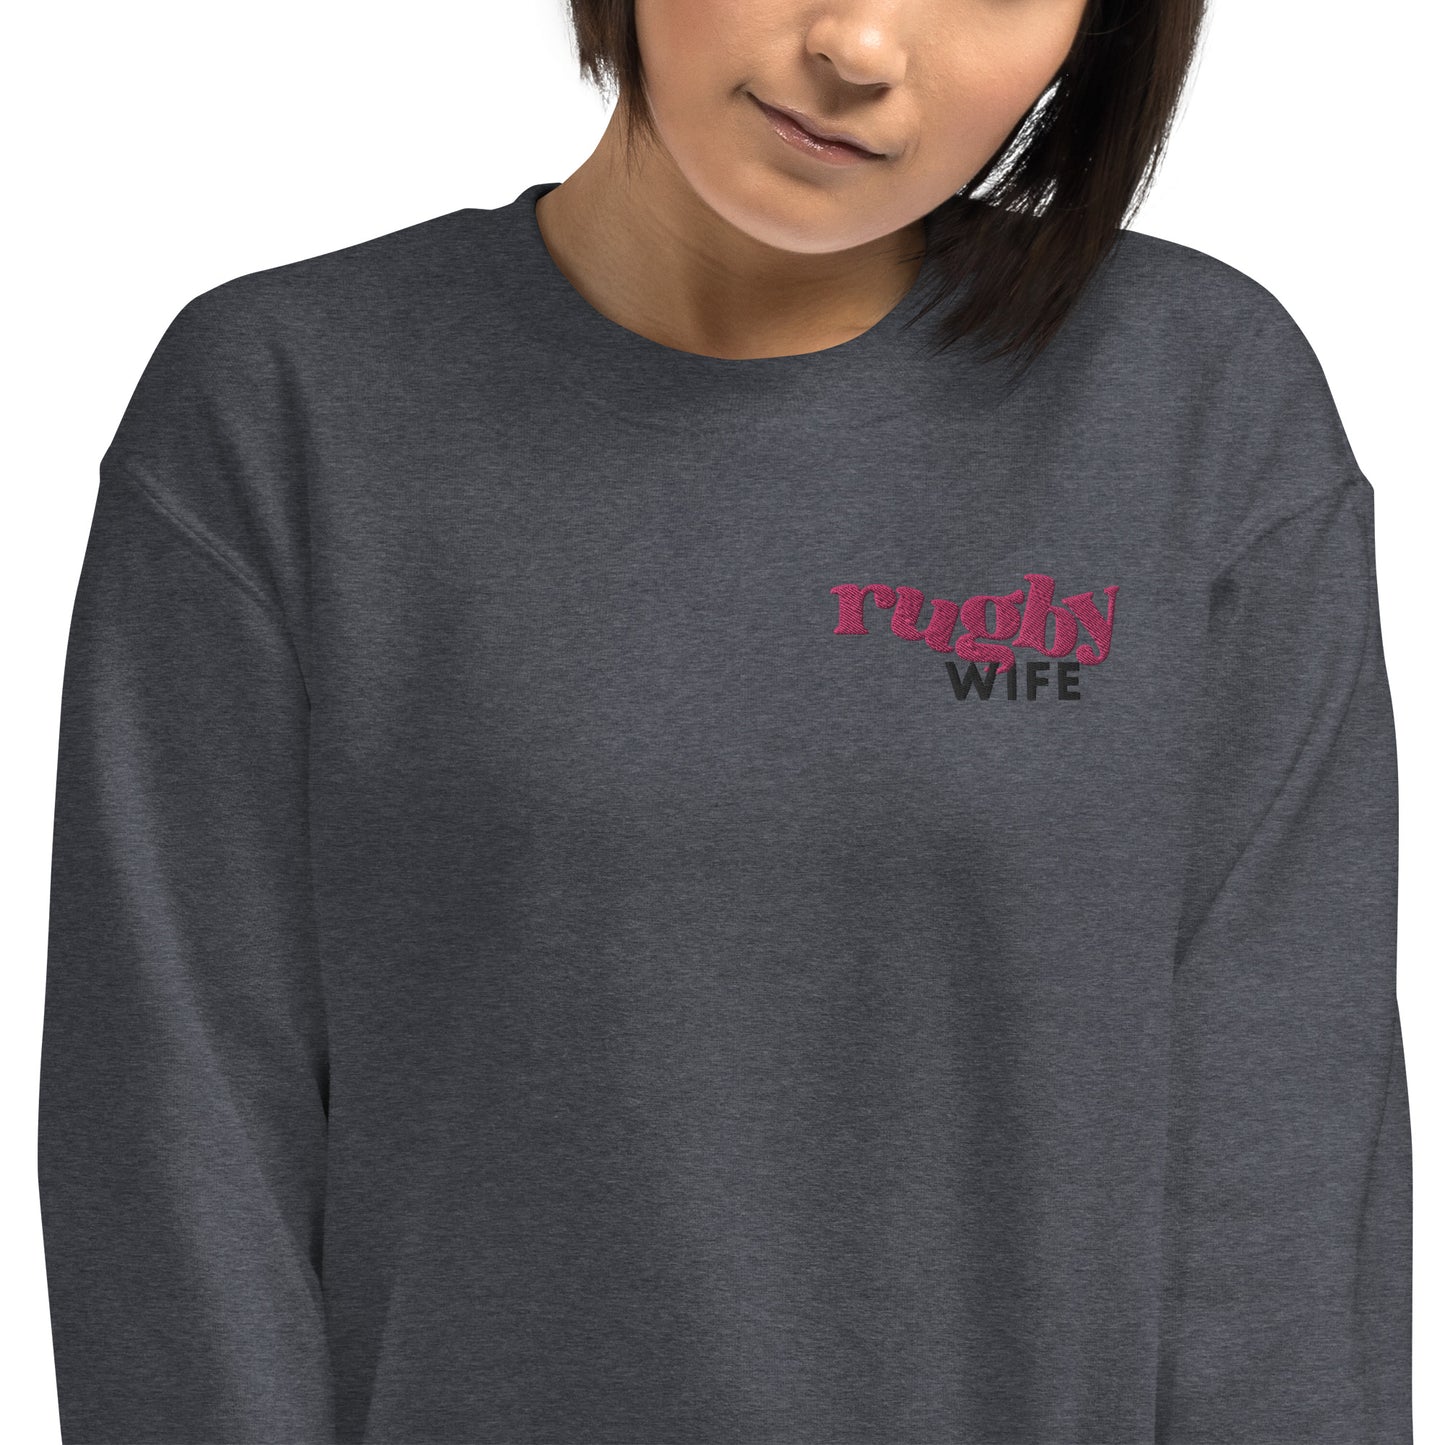 Rugby Wife Unisex Sweatshirt